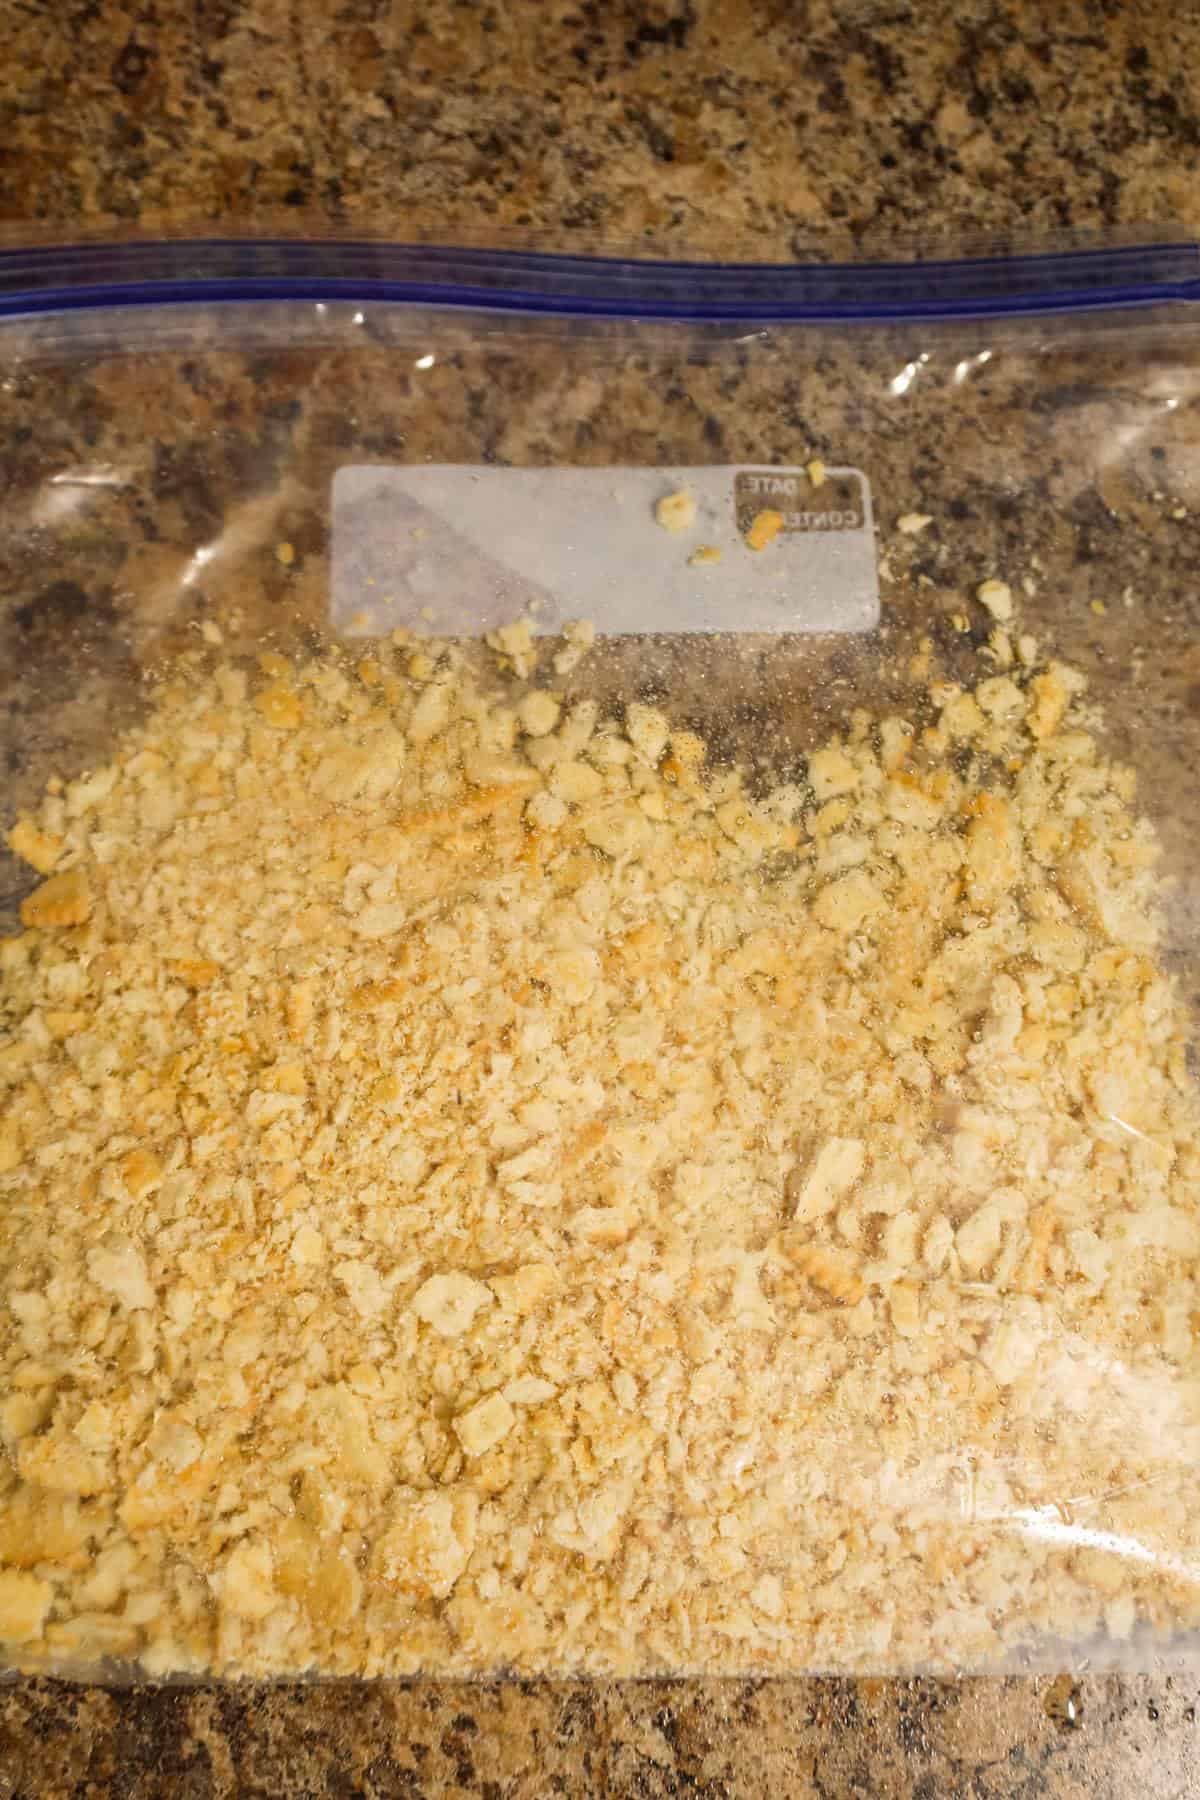 Ritz cracker crumbs in a Ziploc bag